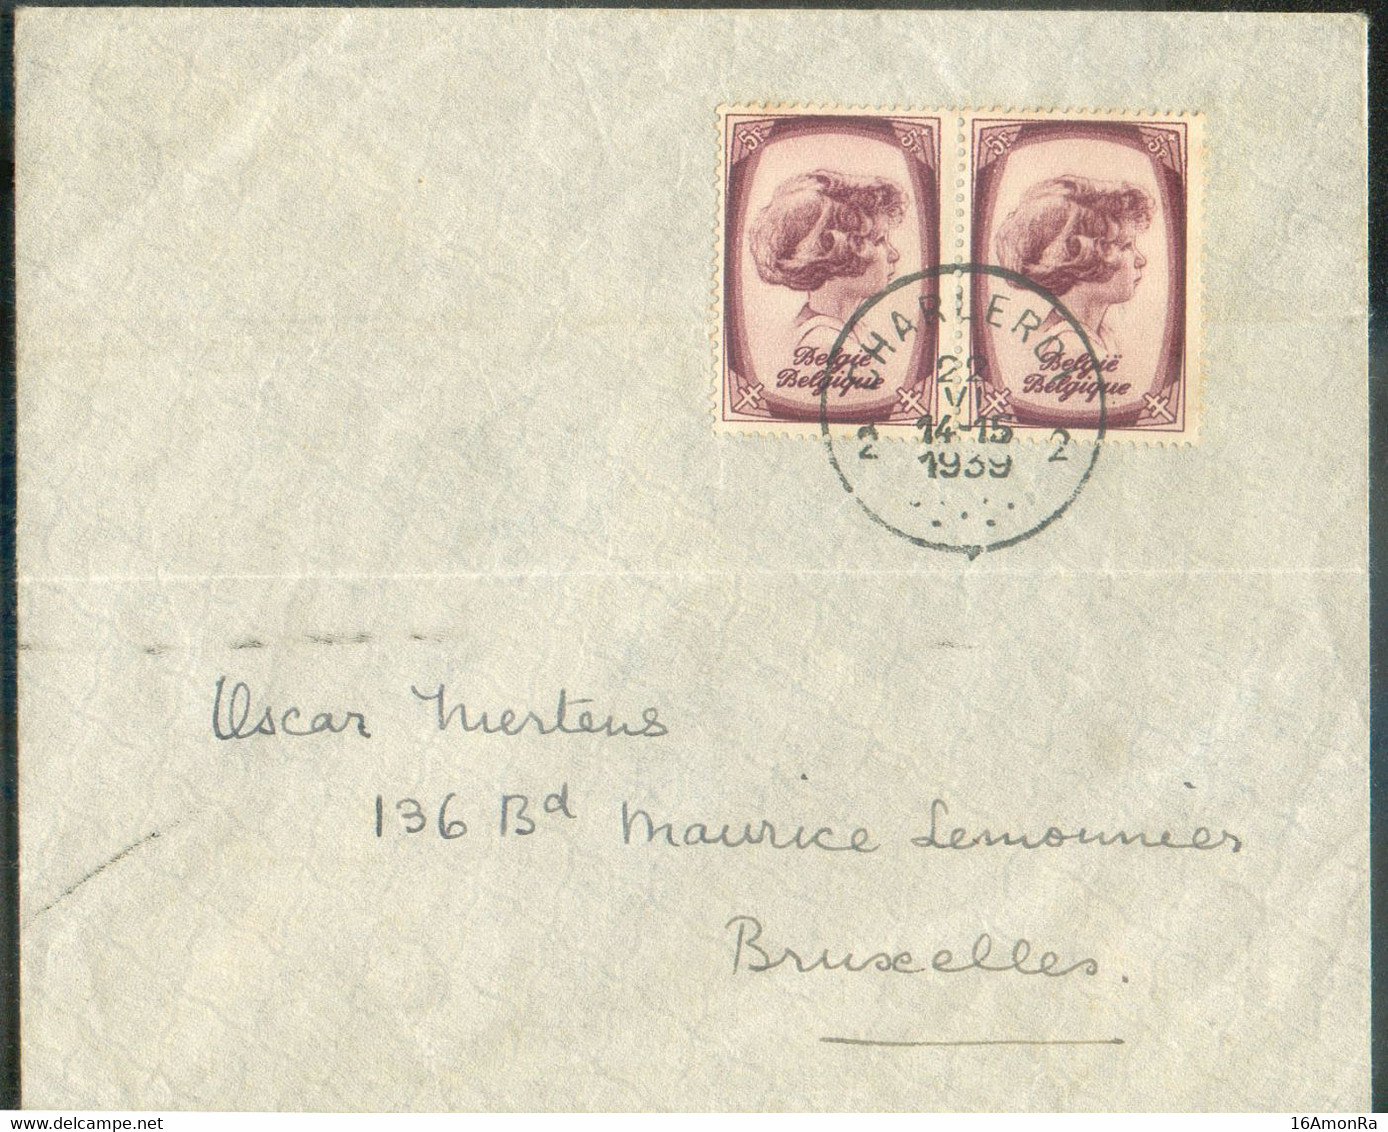 N°495(2) - 5Fr. PRINCE ALBERT (paire) Obl. Sc CHARLEROI 2 sur Enveloppe Du 22-VI-1939 Vers Bruxelles. - TB - 20425 - Briefe U. Dokumente